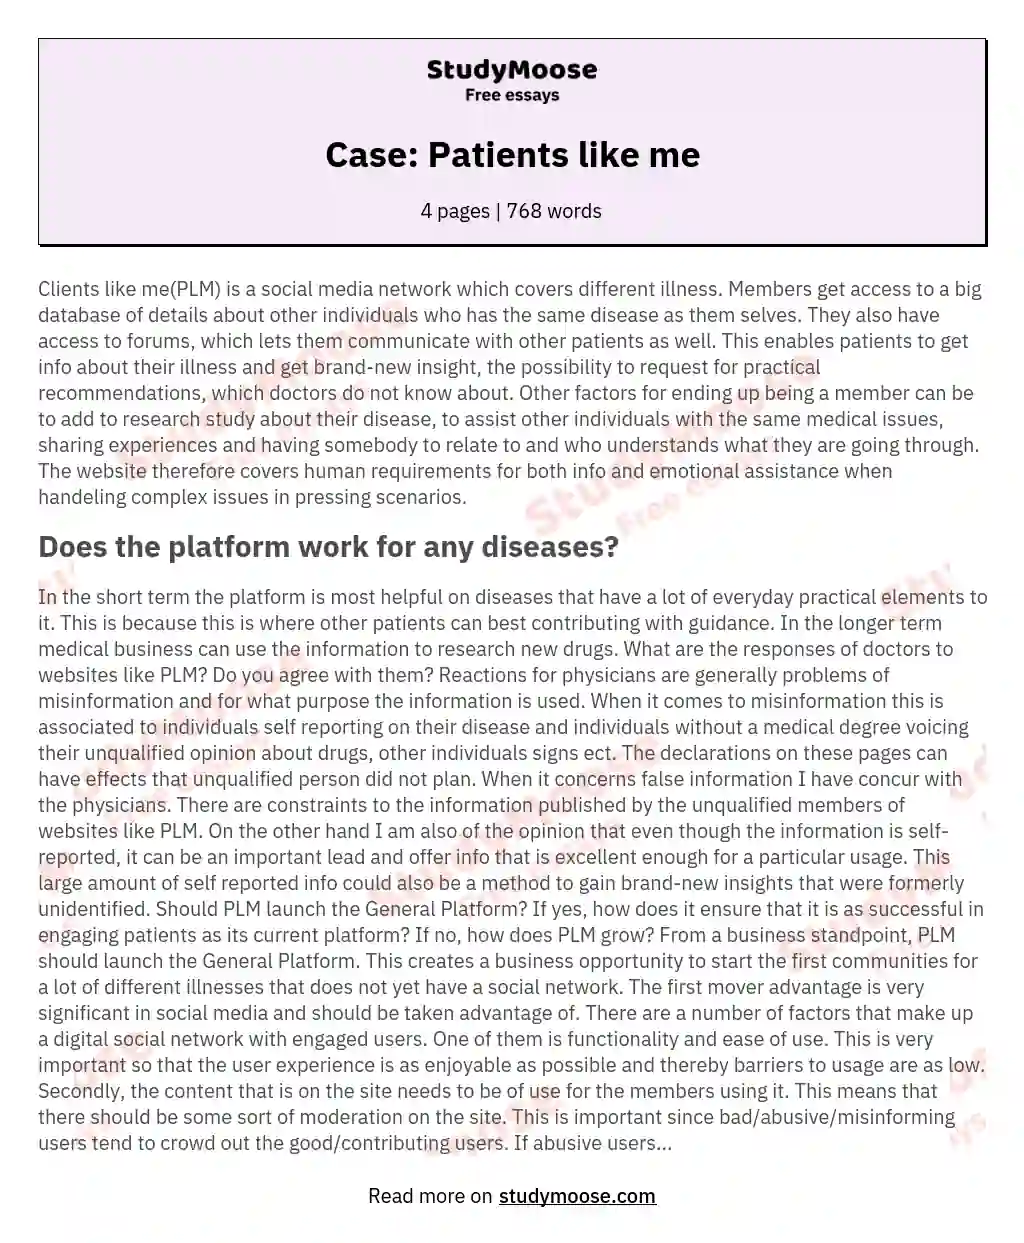 Case: Patients like me essay